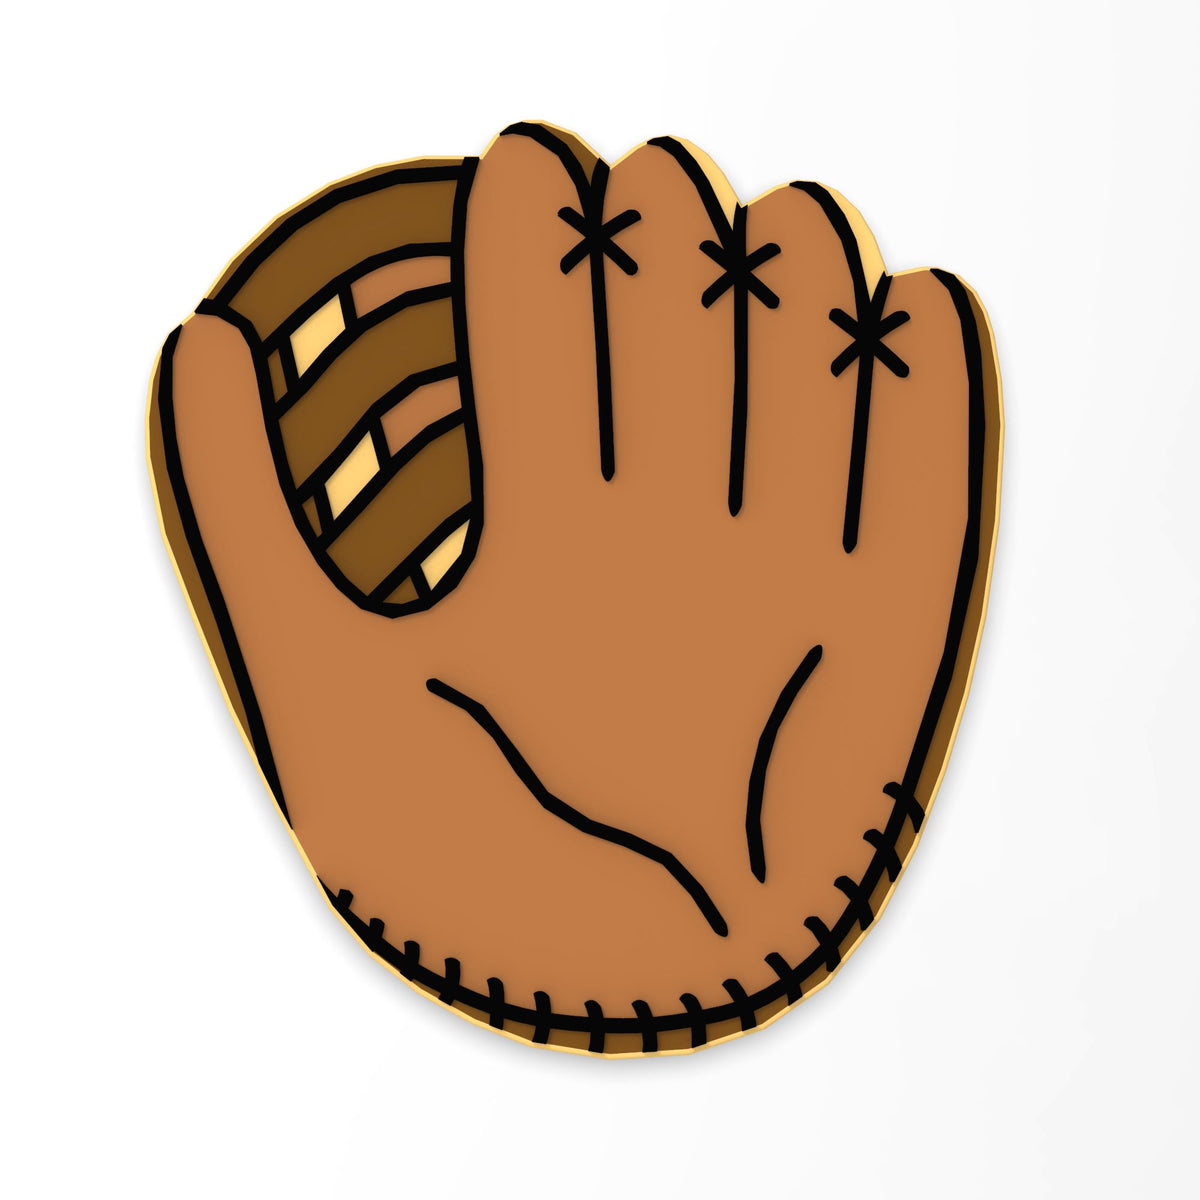 baseball glove clip art